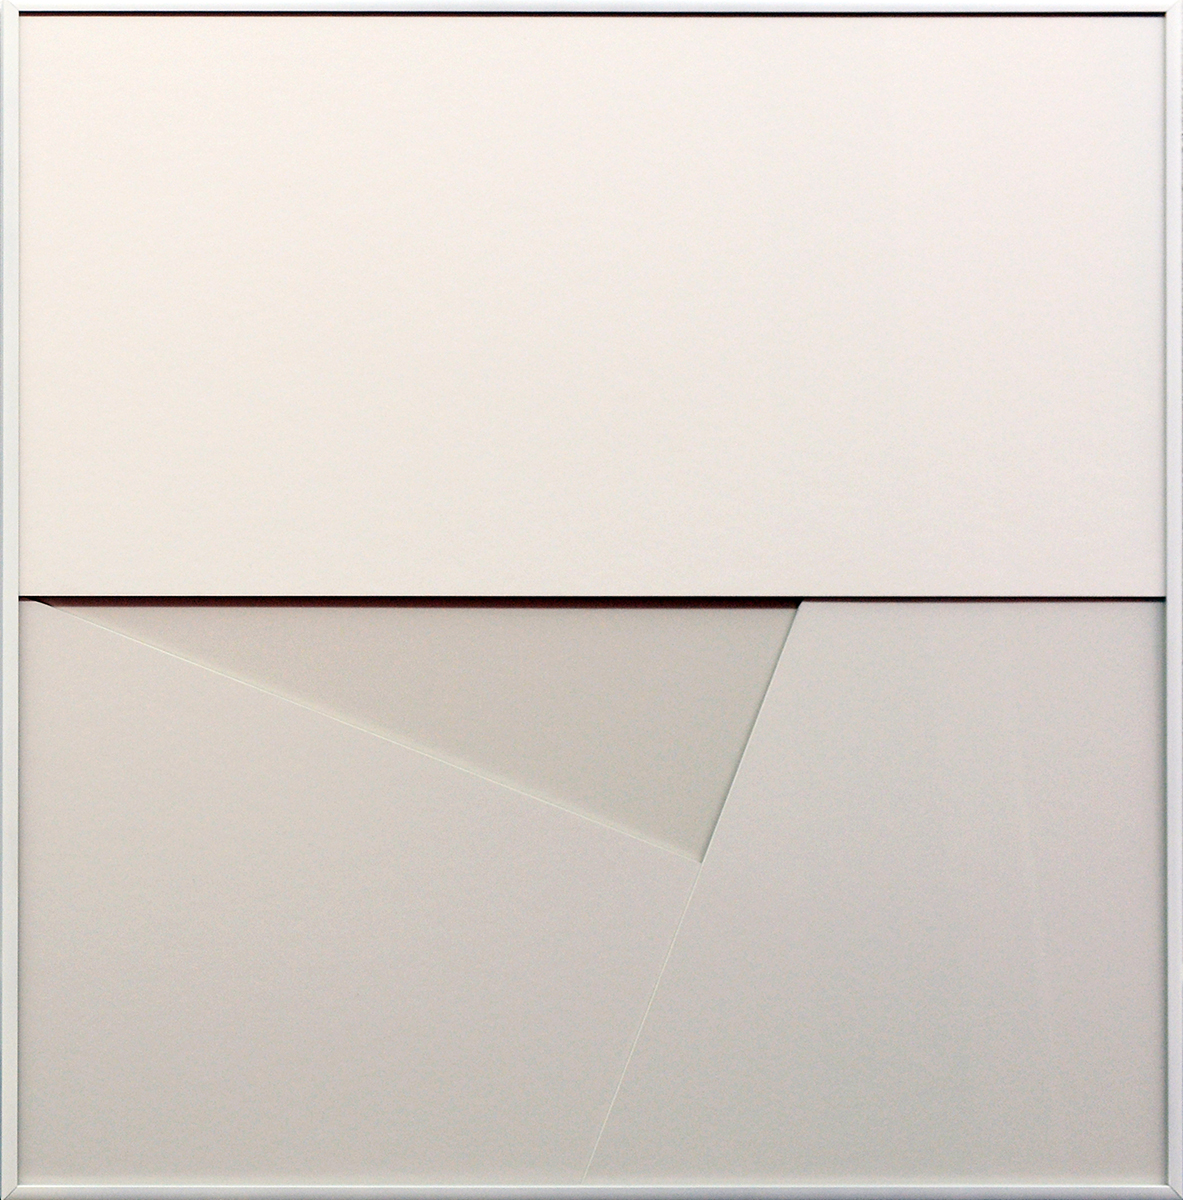 weisse objekte - verdichtete Transparenz VT 04, 201660 x 60 x 4 cmcardboard and glass, framed